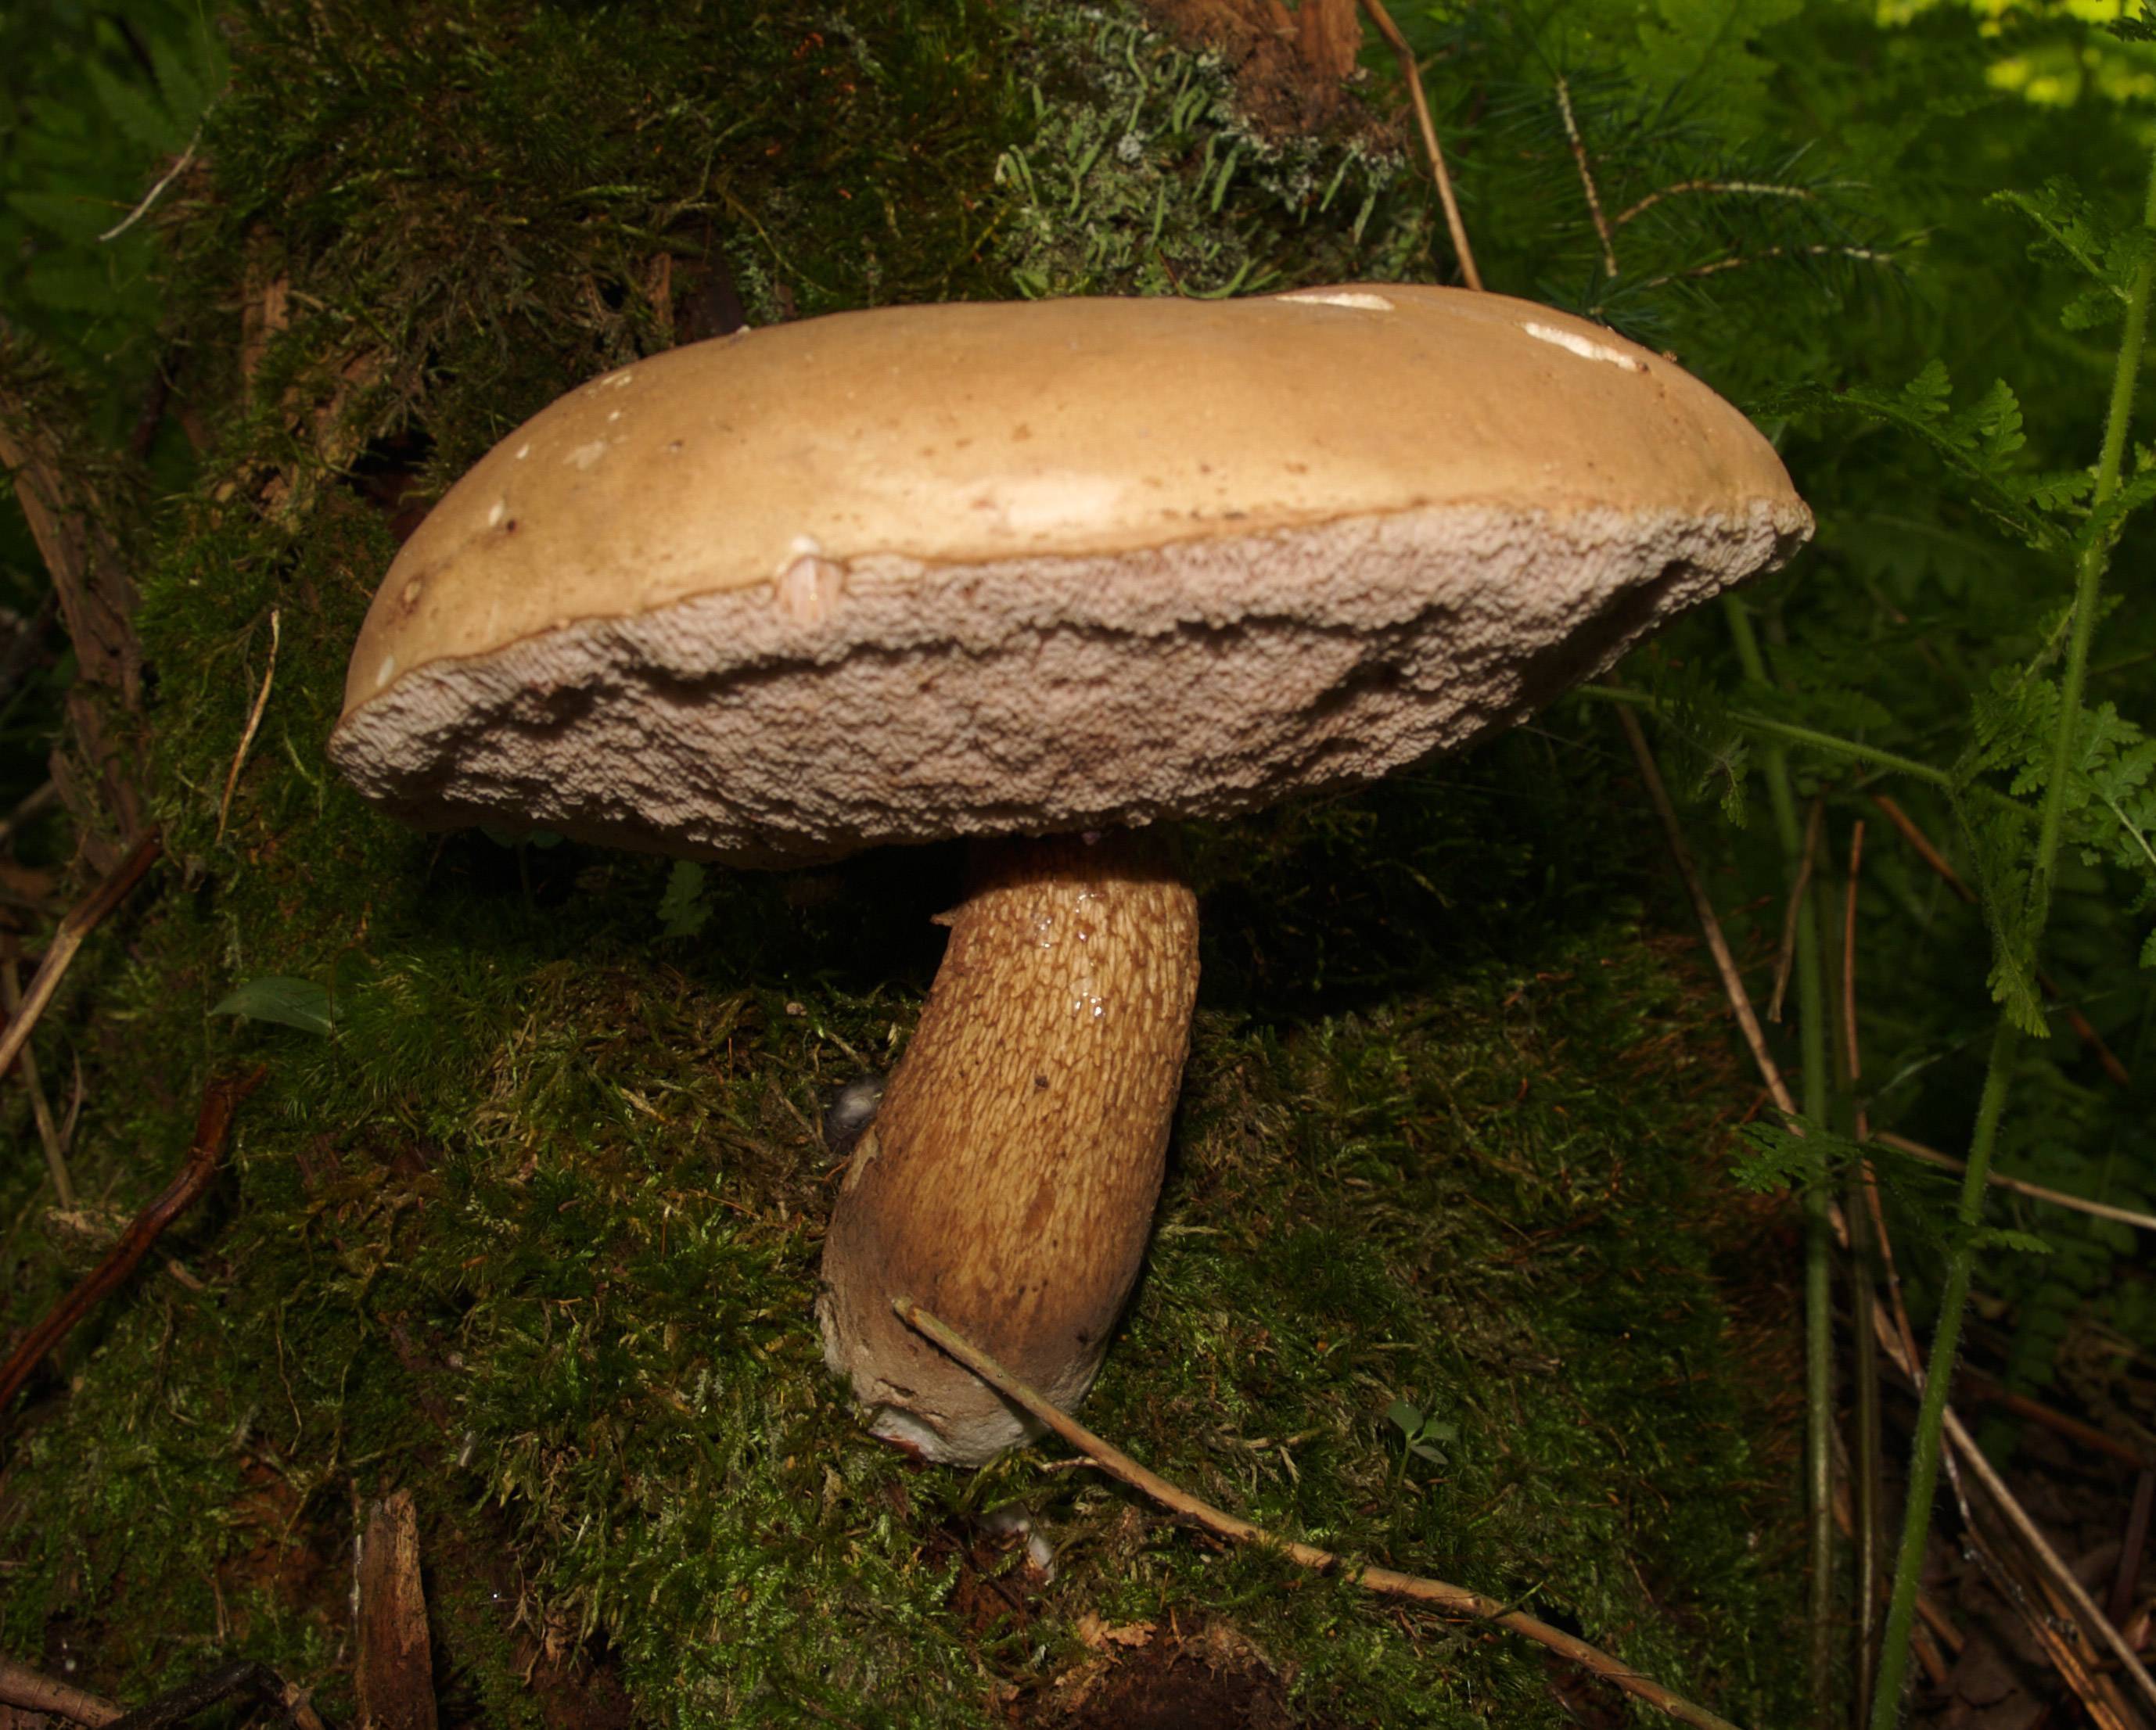 Ложный белый гриб: фото и описание, отличия от настоящего